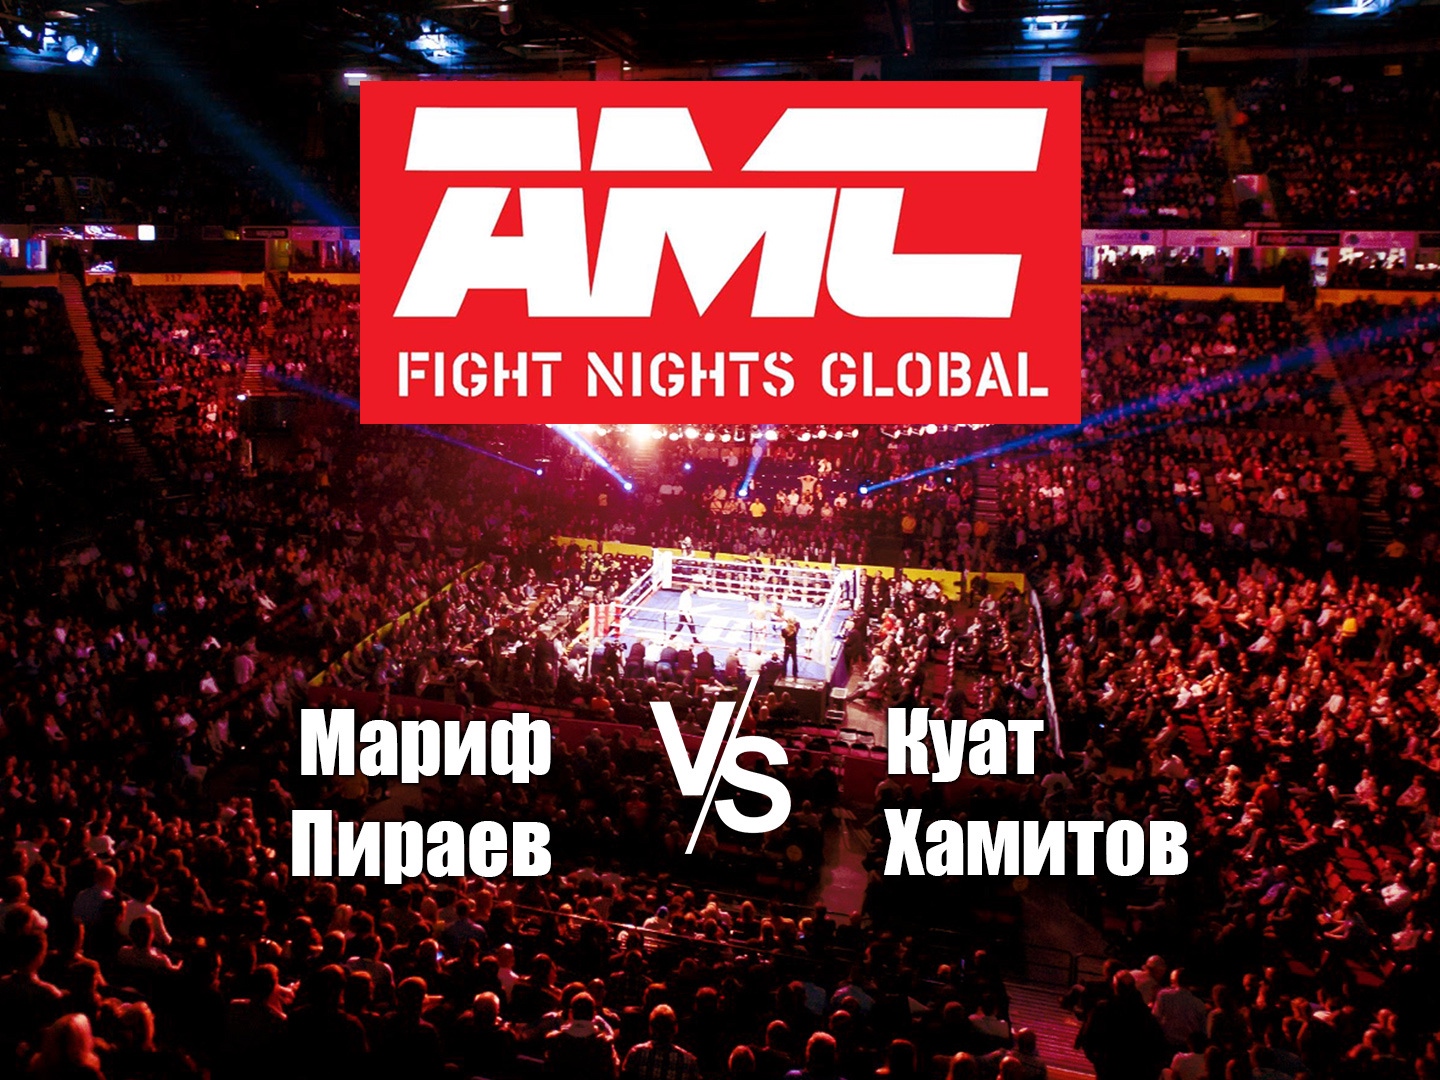 Матч тв прямой эфир сочи. Матч ТВ прямой эфир АМС файт най. AMC Fight Nights. AMC Fight Nights прямая трансляция.